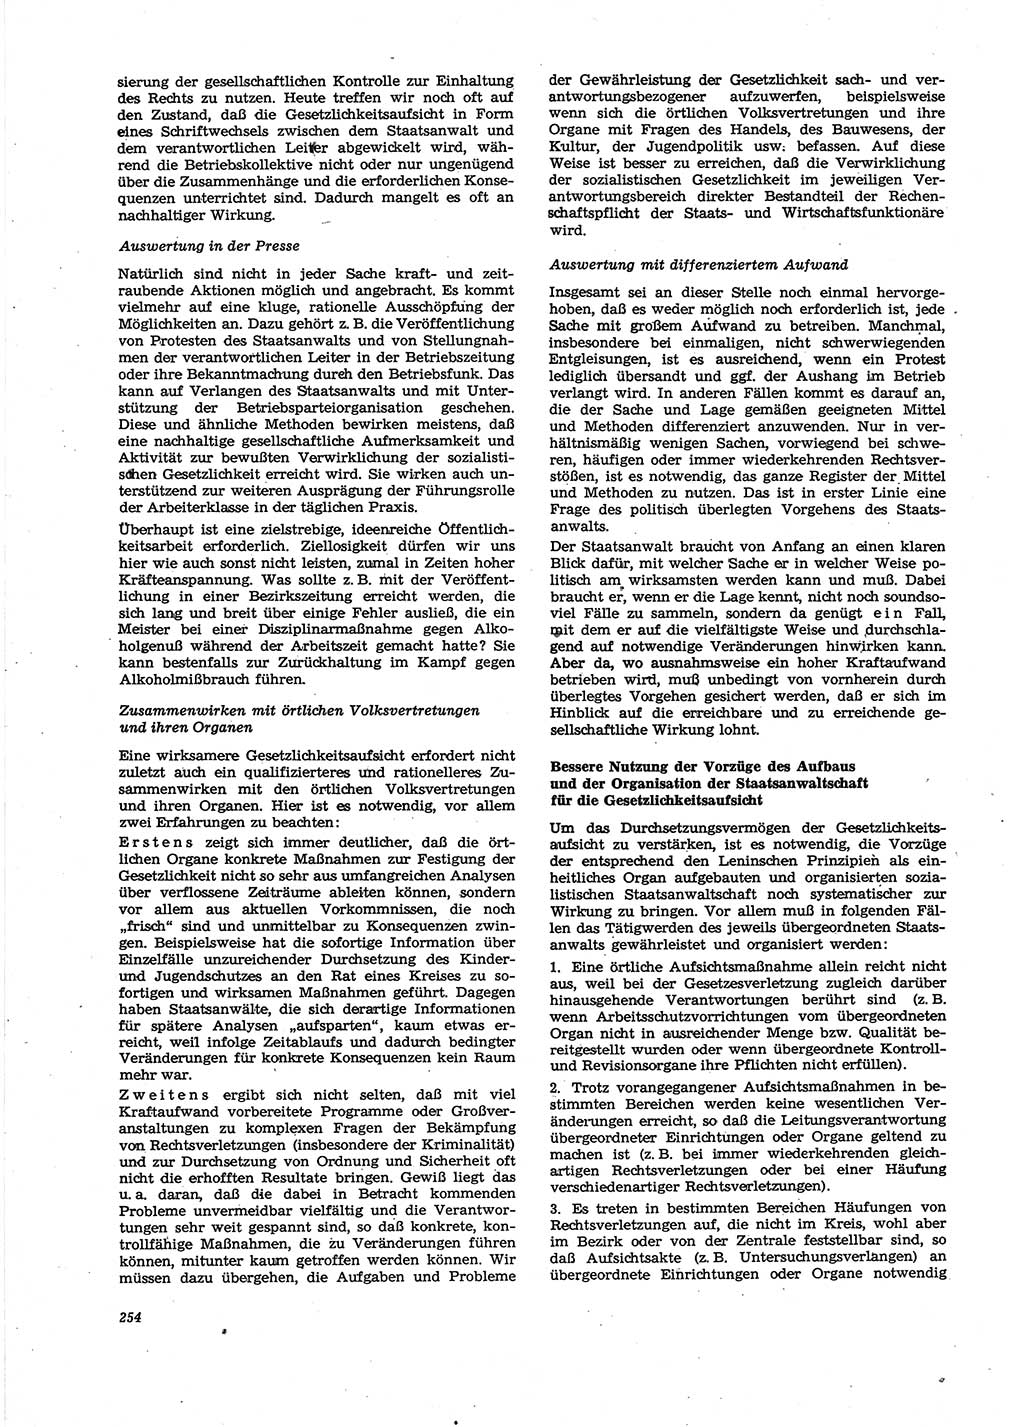 Neue Justiz (NJ), Zeitschrift für Recht und Rechtswissenschaft [Deutsche Demokratische Republik (DDR)], 27. Jahrgang 1973, Seite 254 (NJ DDR 1973, S. 254)